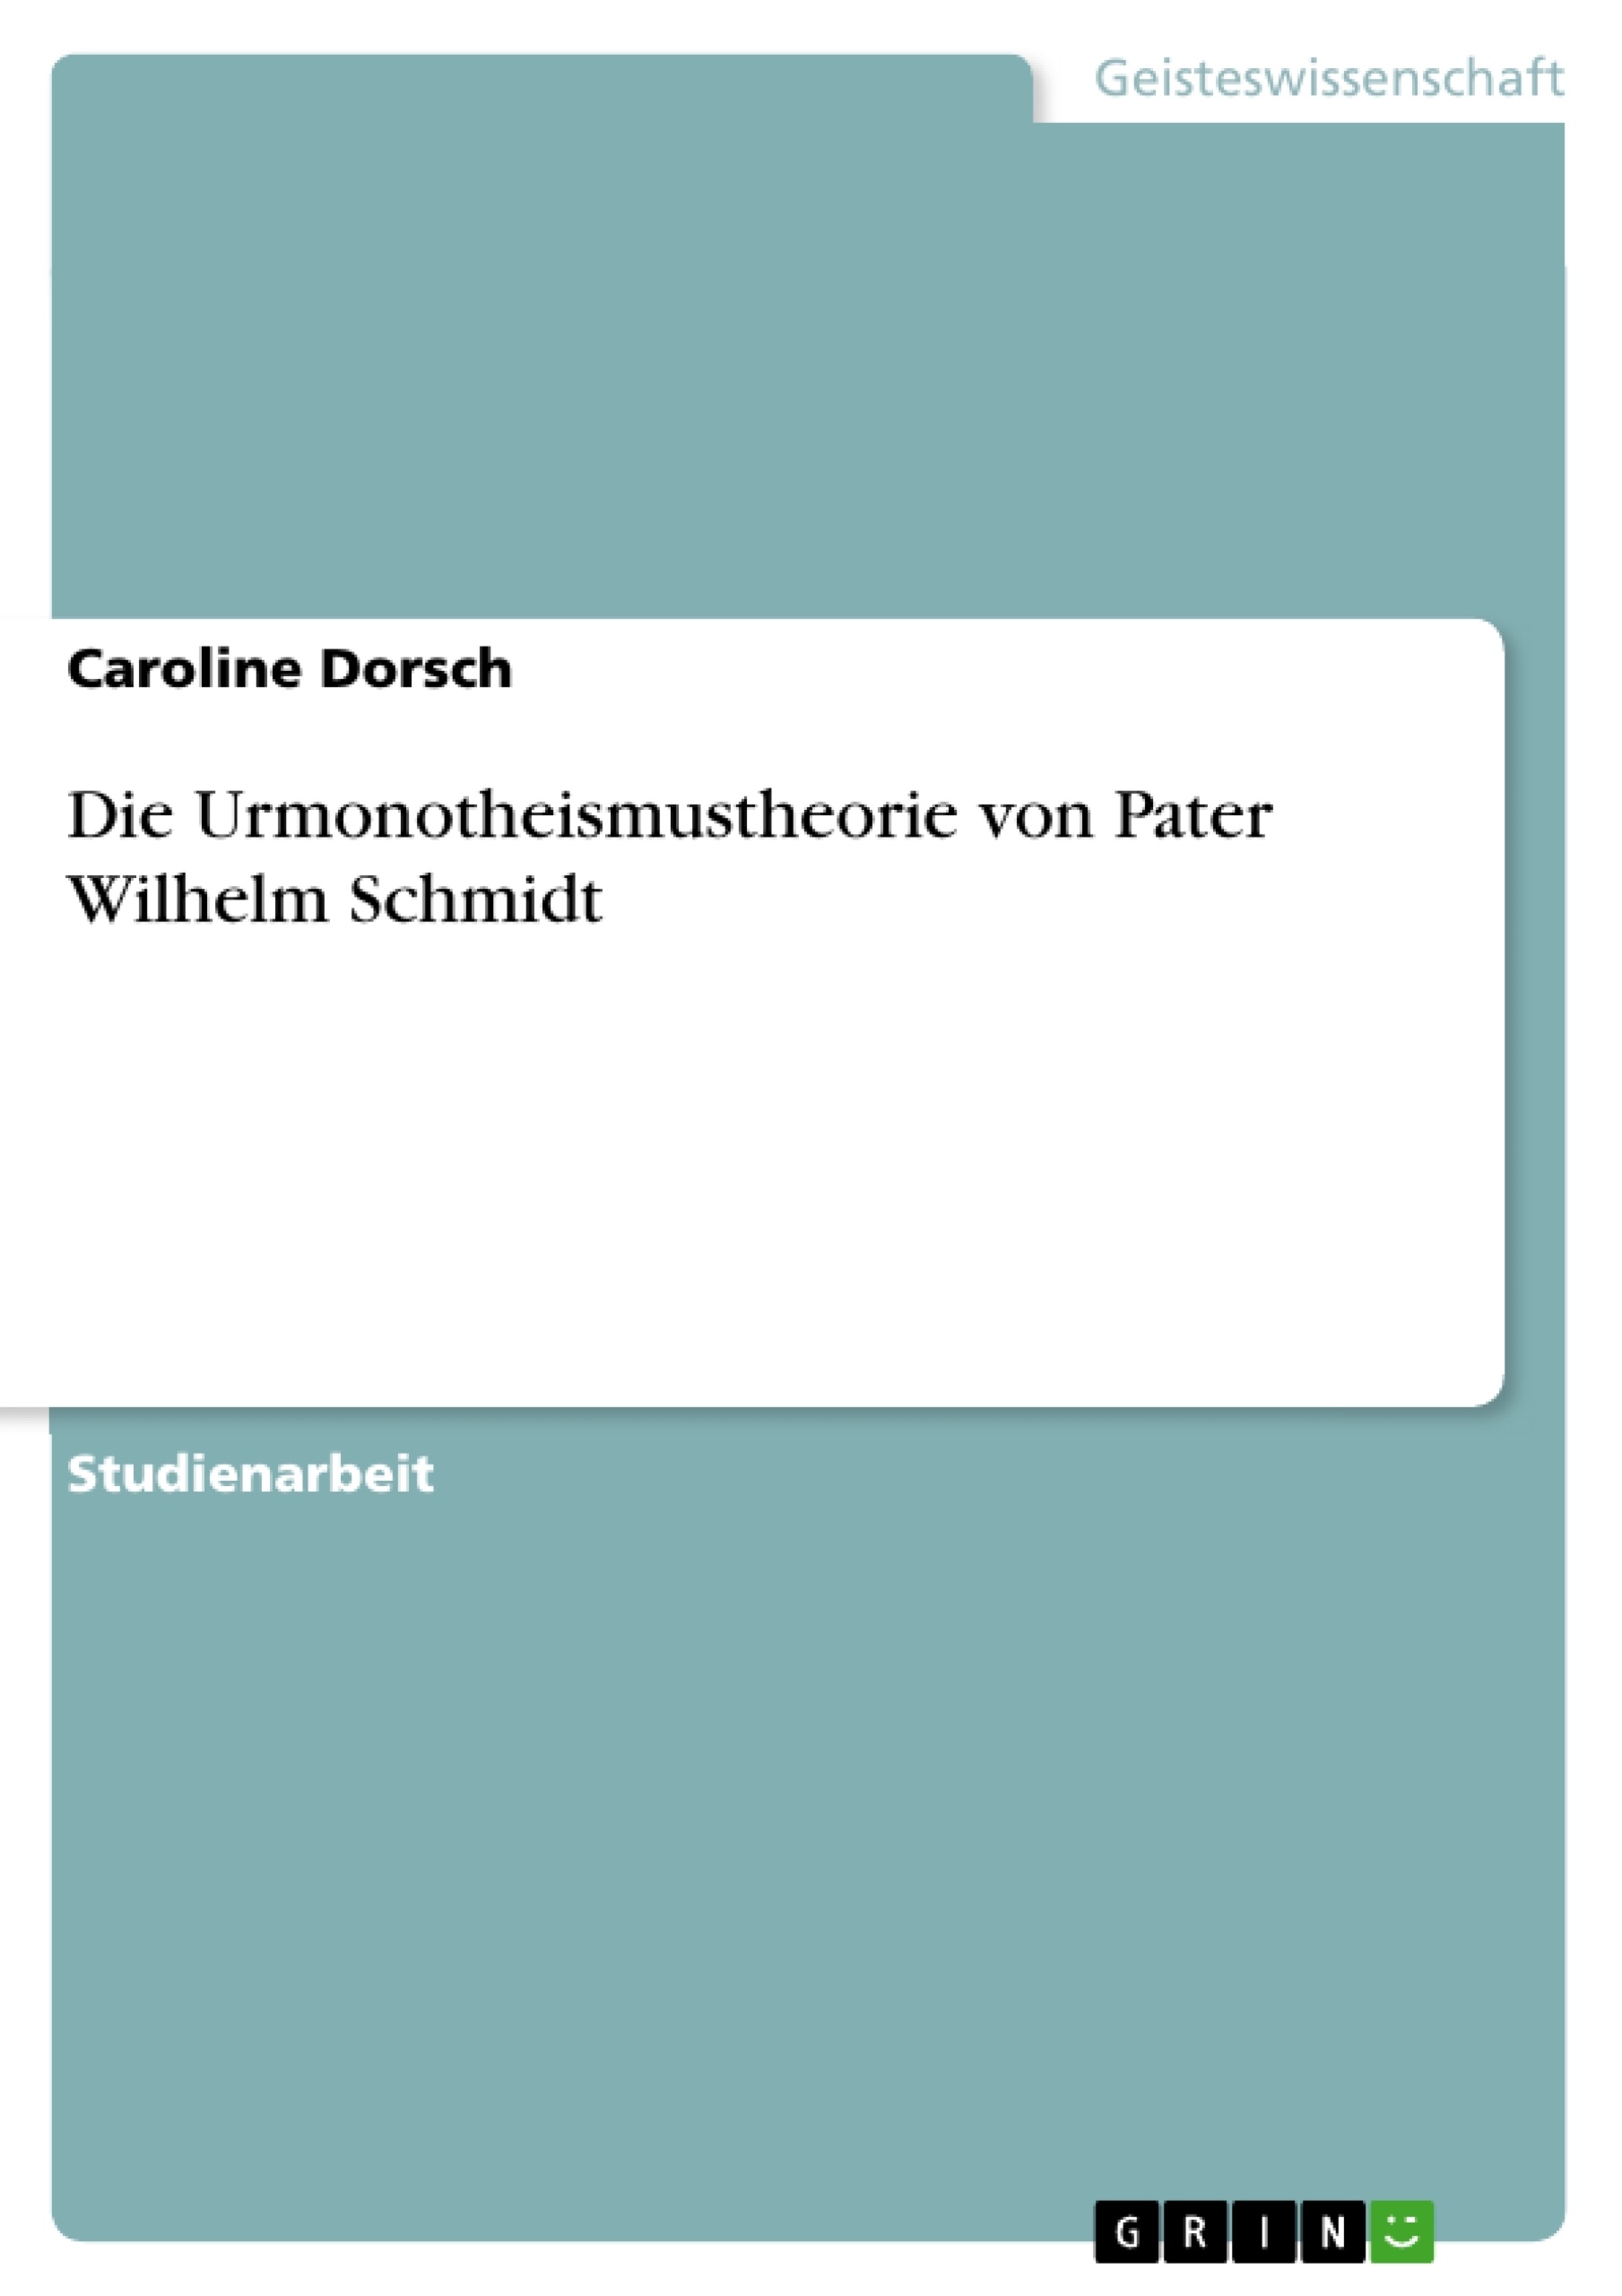 Título: Die Urmonotheismustheorie von Pater Wilhelm Schmidt